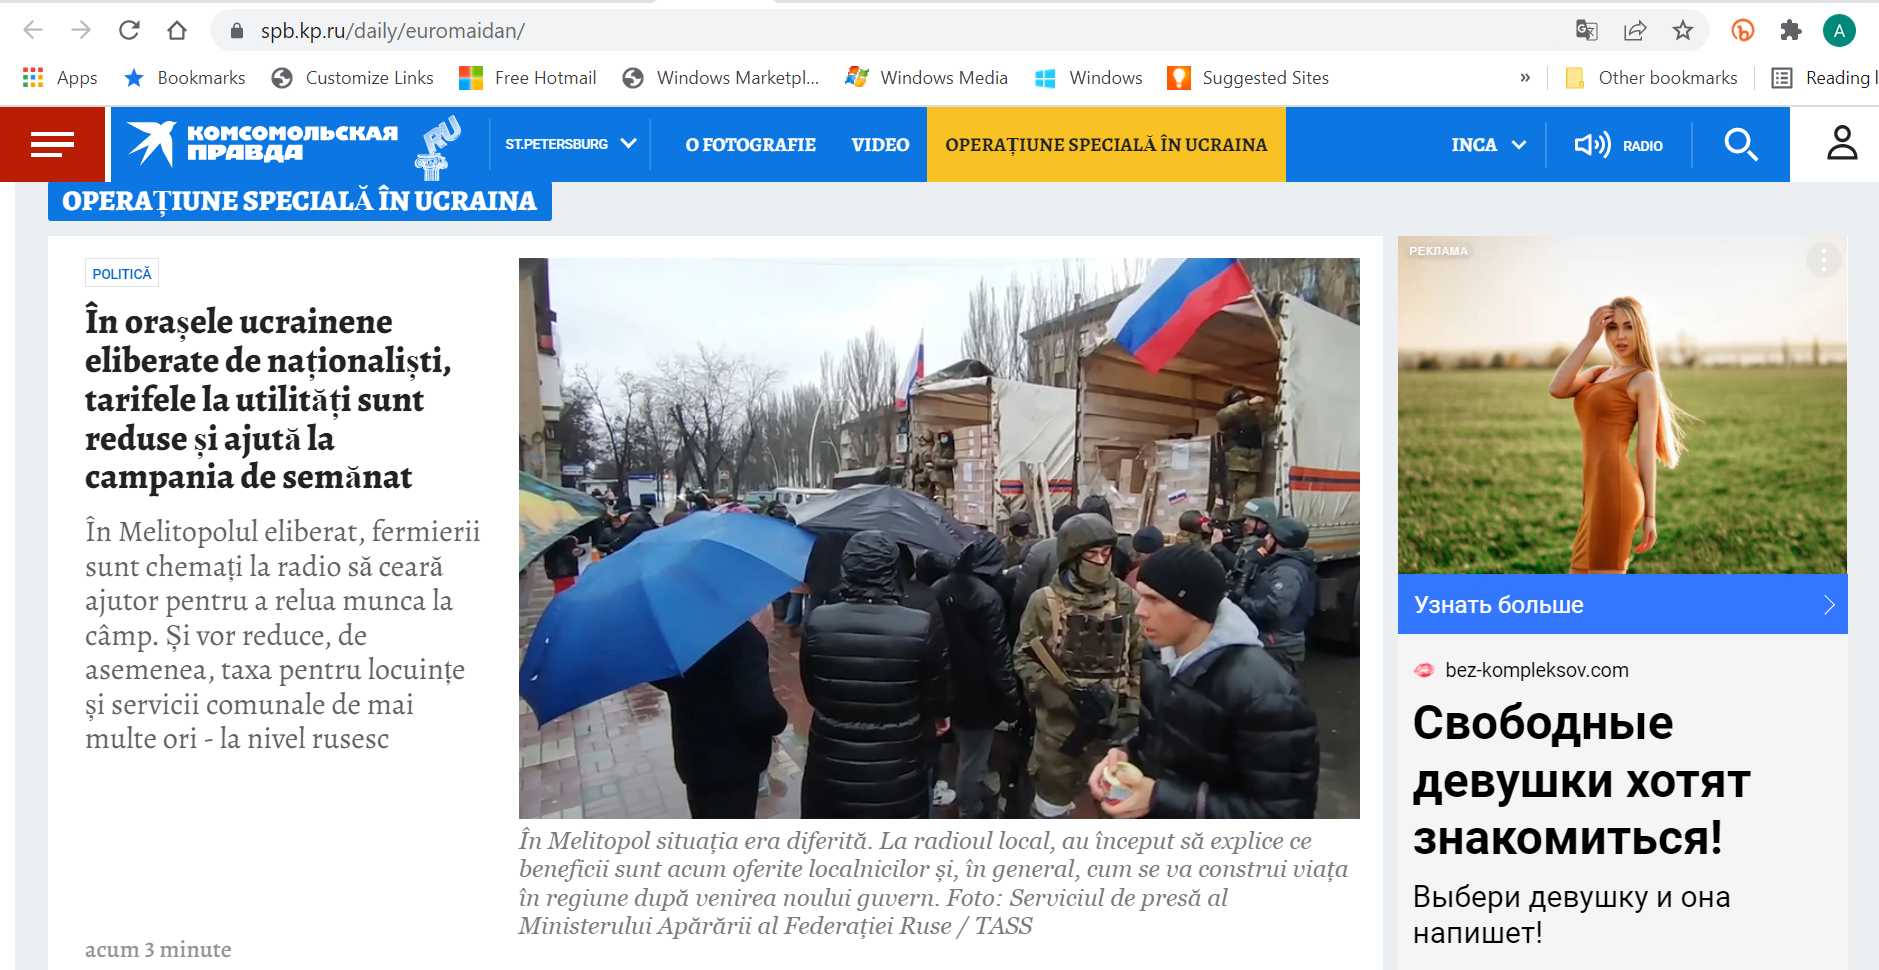 Cum prezintă presa rusă de propagandă războiul din Ucraina: ”Operațiunea specială a Rusiei a salvat lumea” GALERIE FOTO